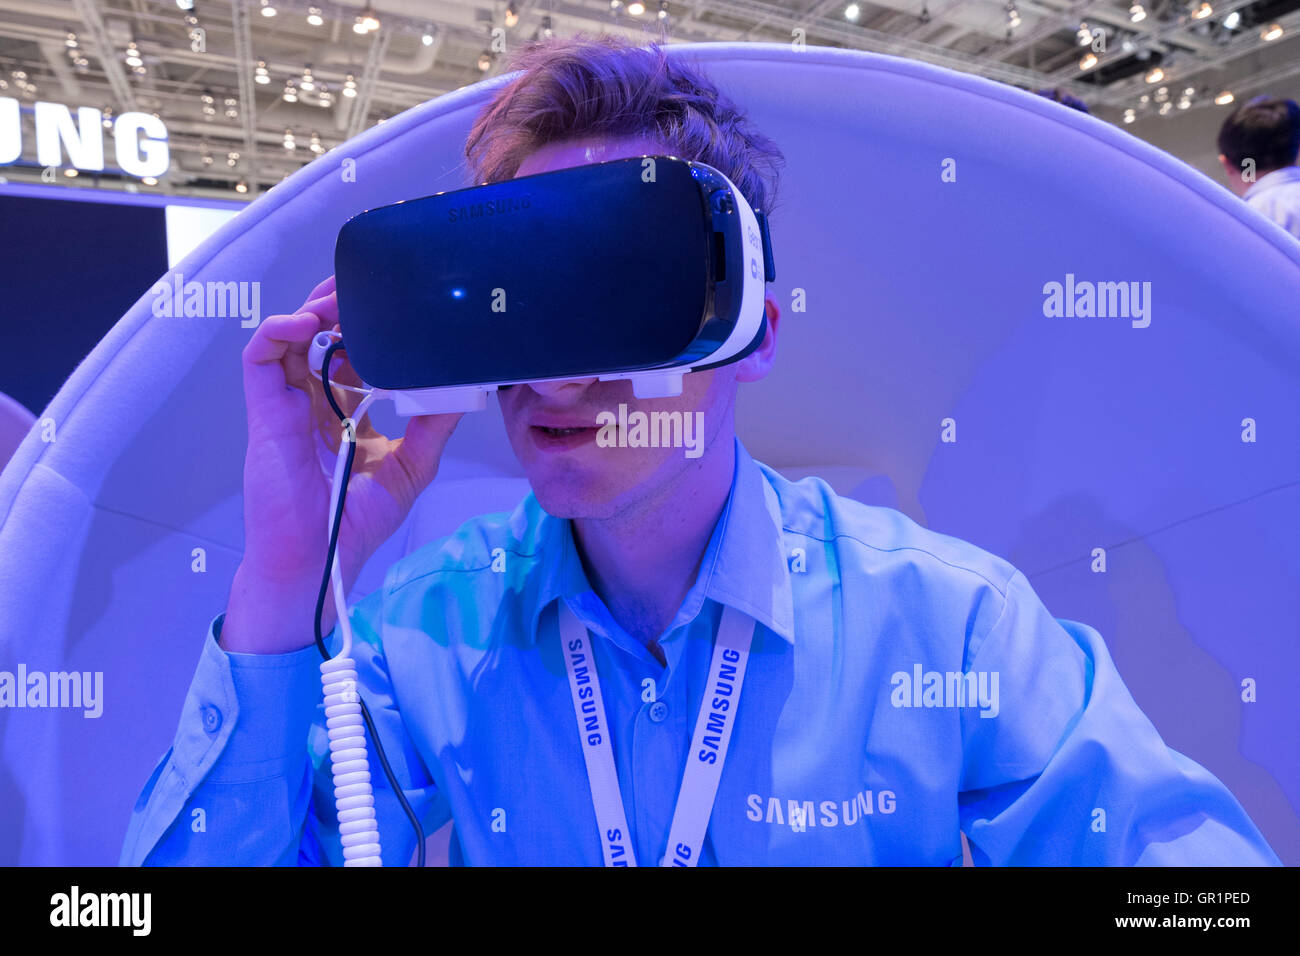 Samsung in realtà virtuale (VR) auricolare essendo dimostrato al visitatore al 2016 IFA (Internationale Funkausstellung Berlin), Berlino, Foto Stock